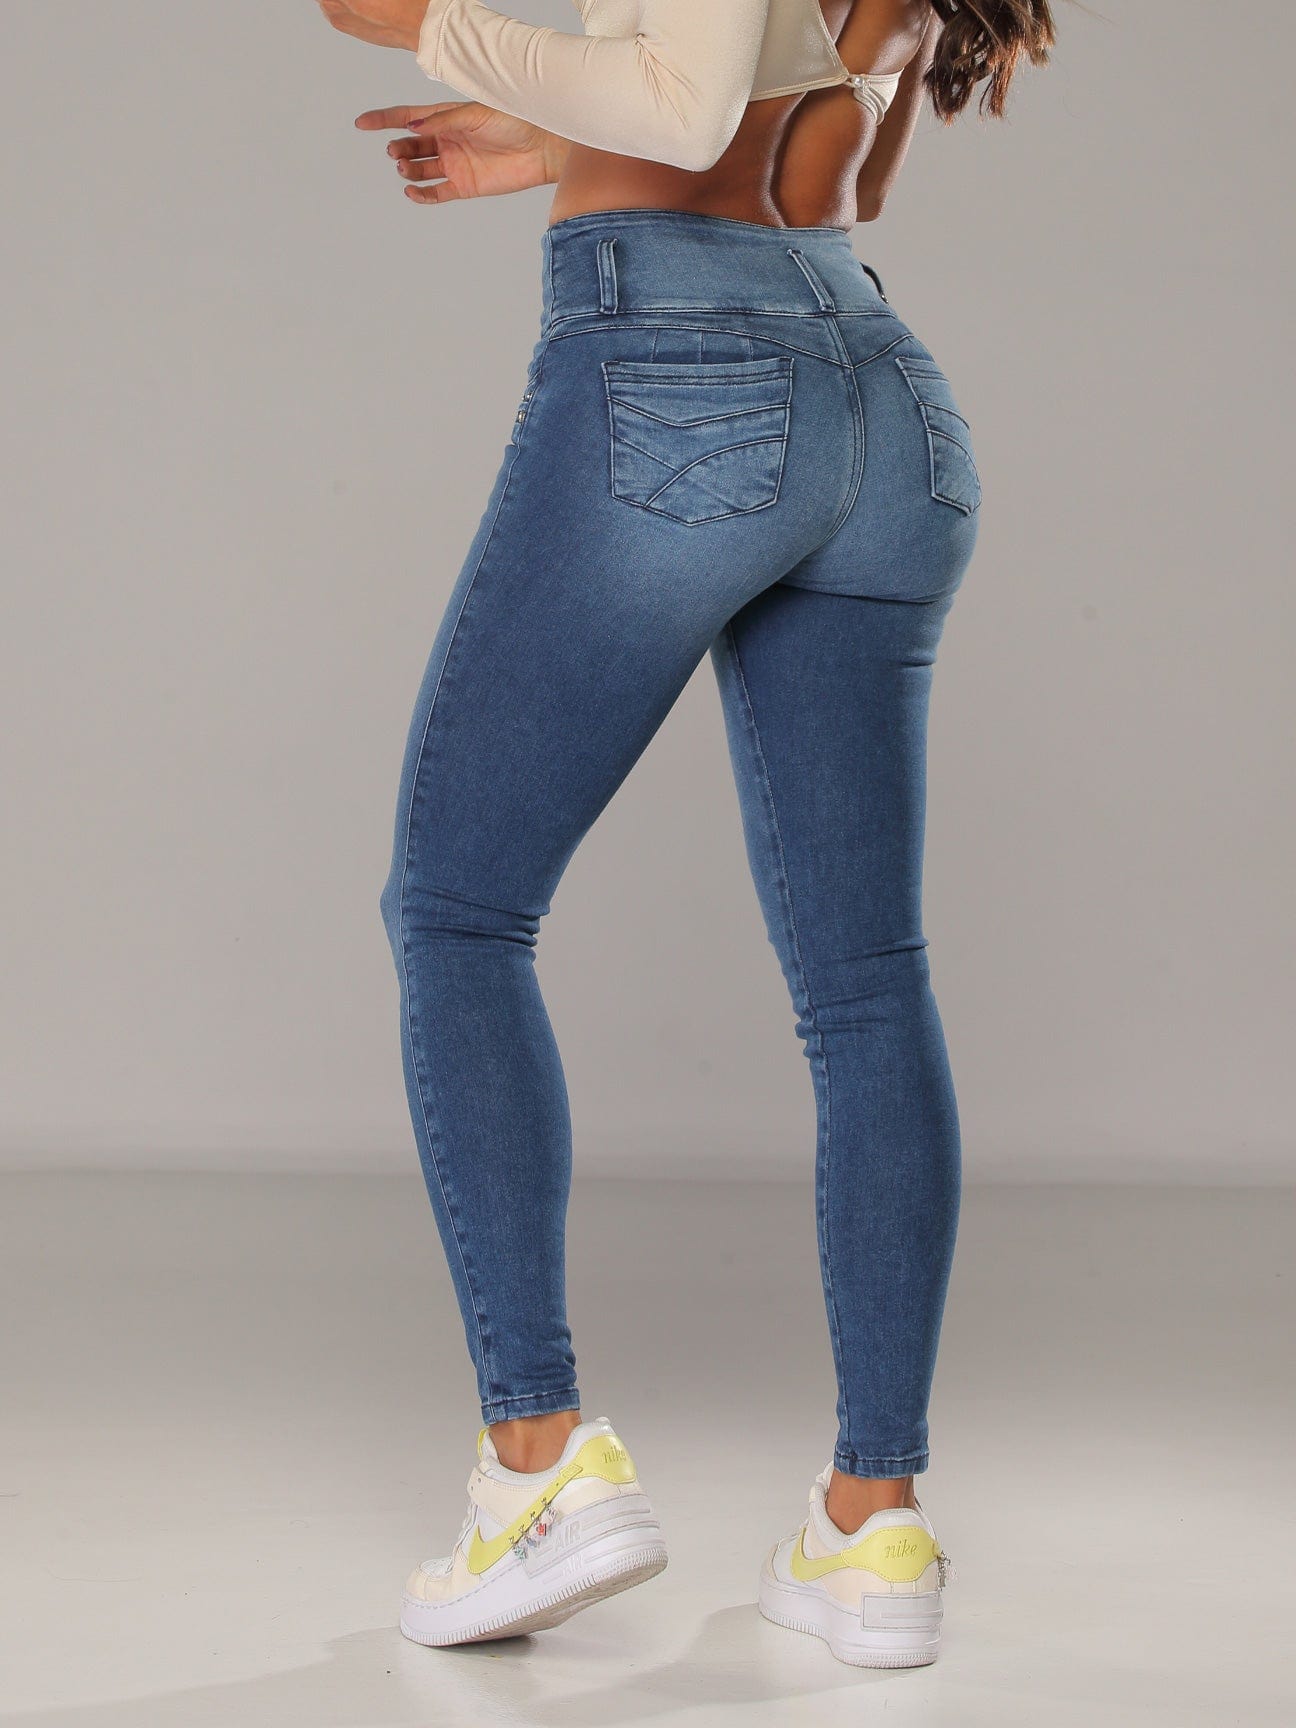 Jeans push up la forma de levantar la cola sin cirugía